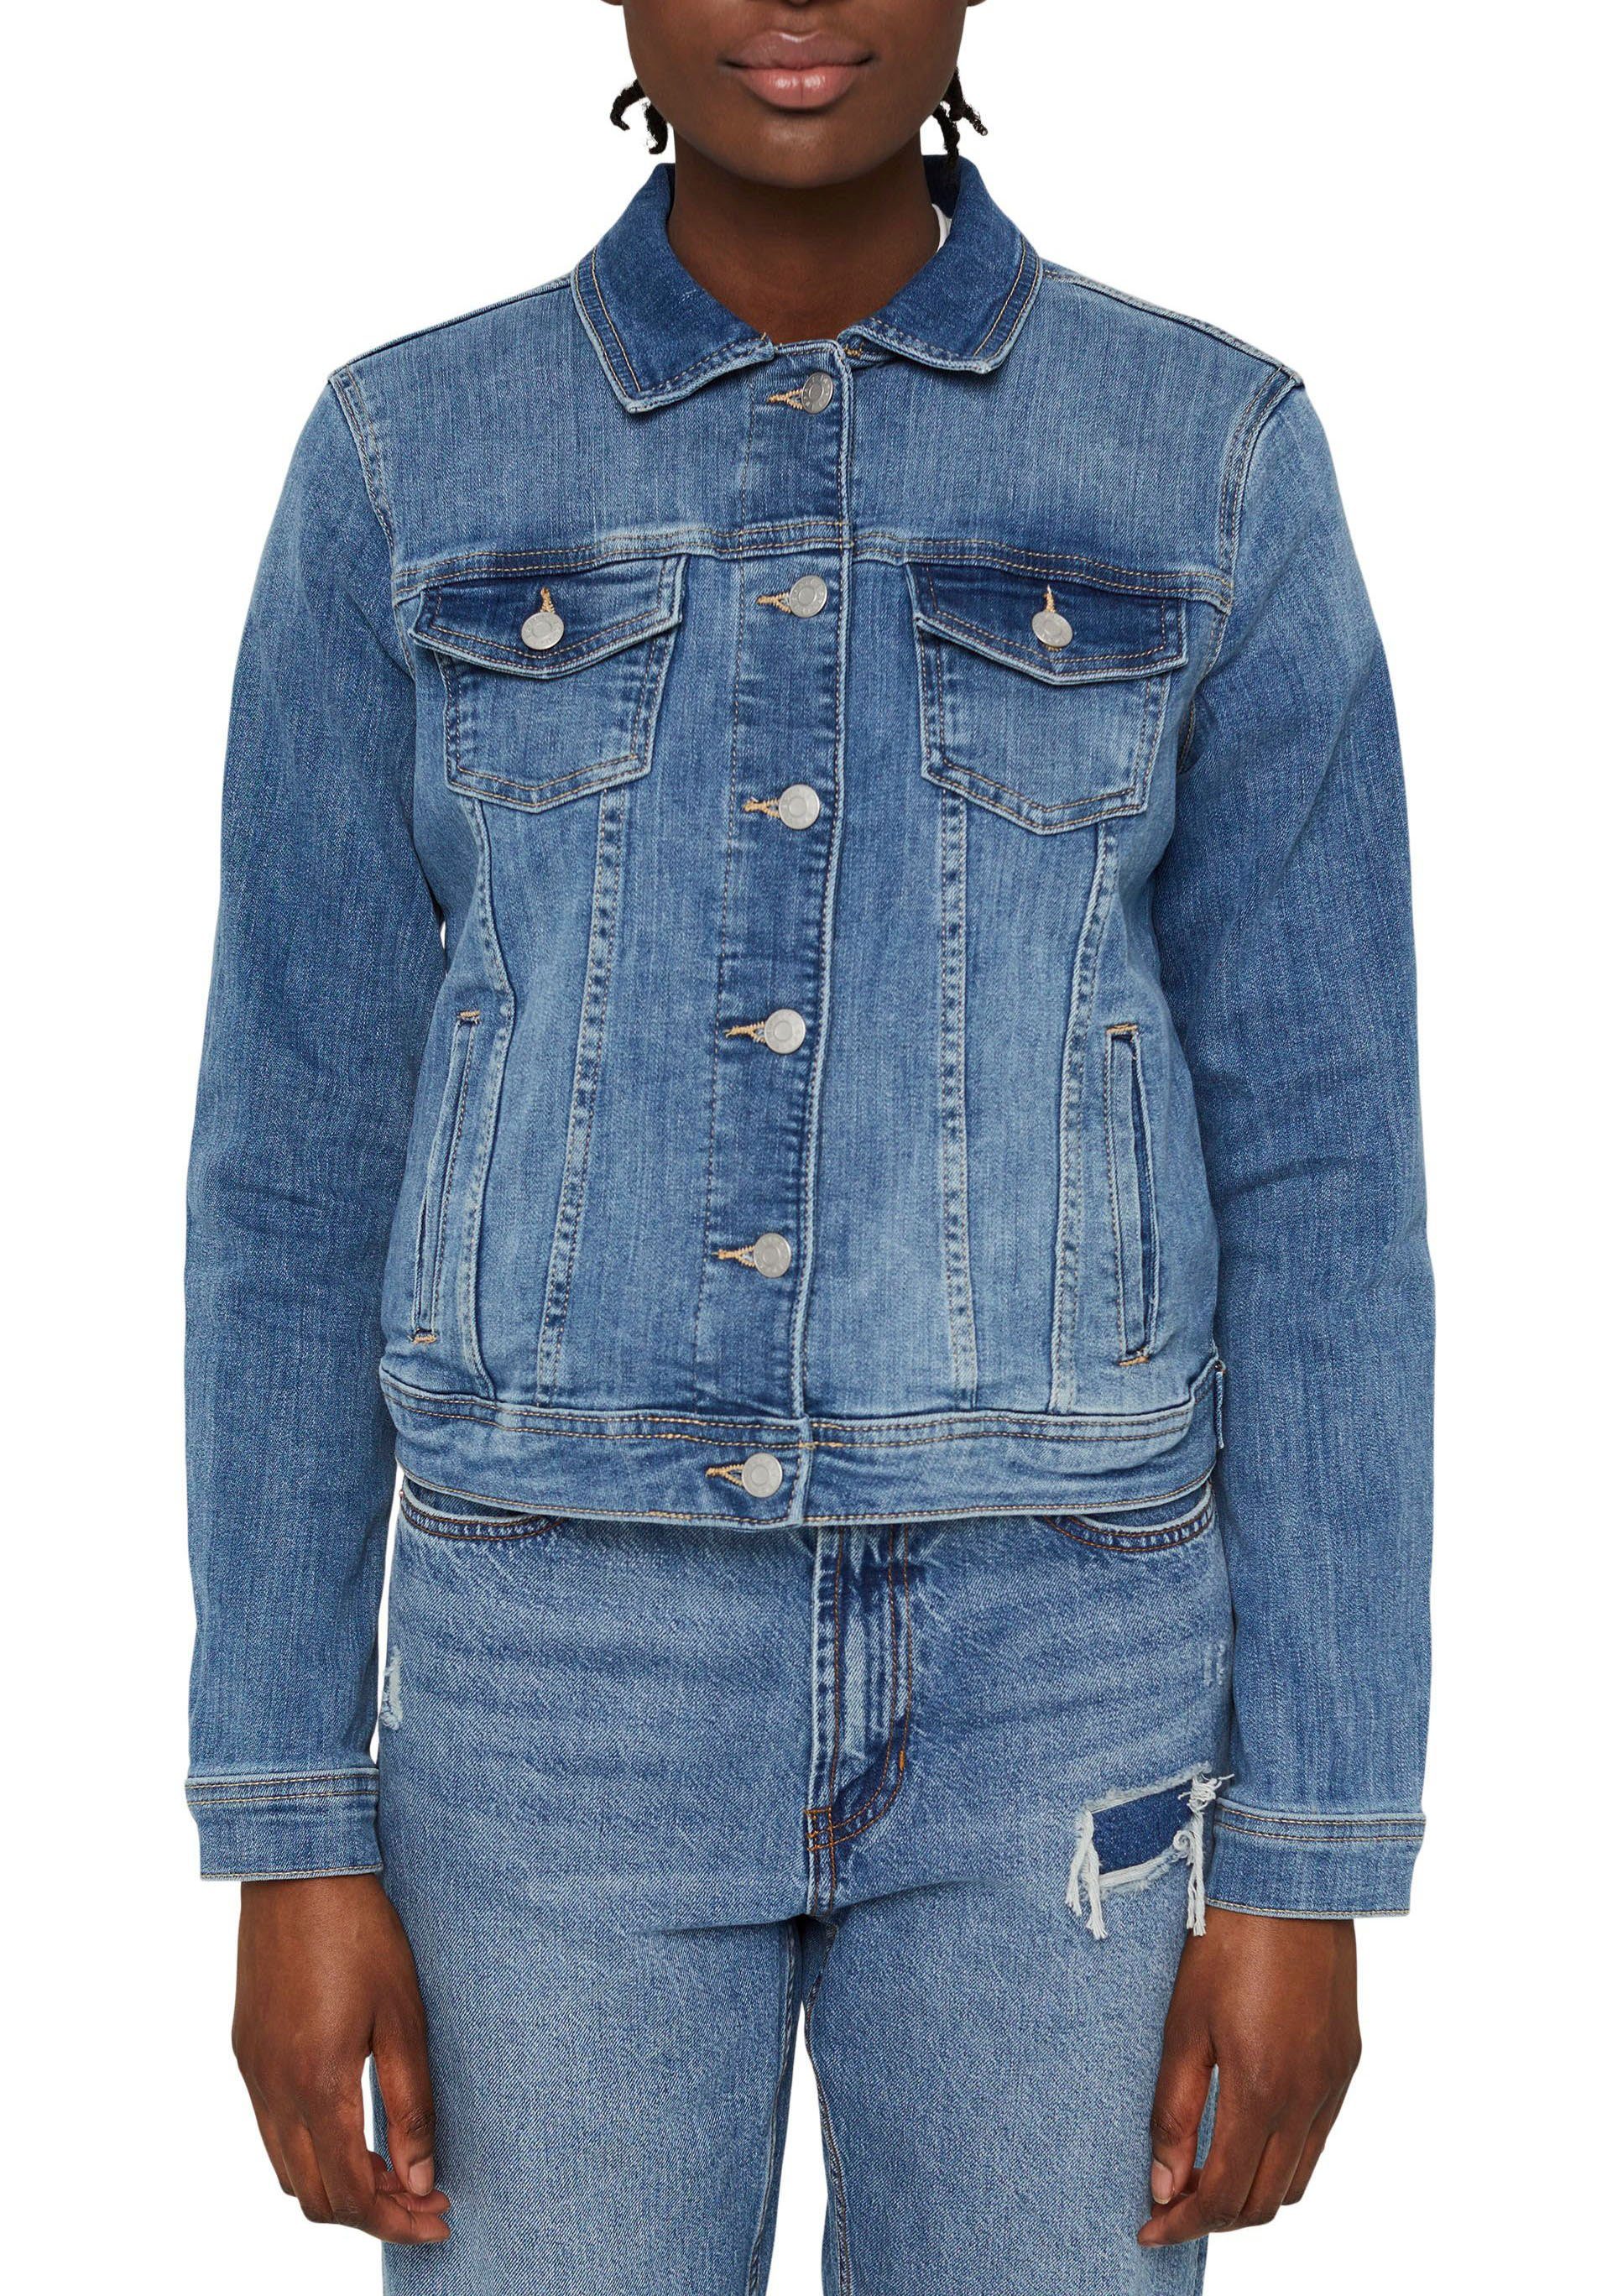 Esprit Jeansjacke mit Washed-Effekten kaufen | OTTO